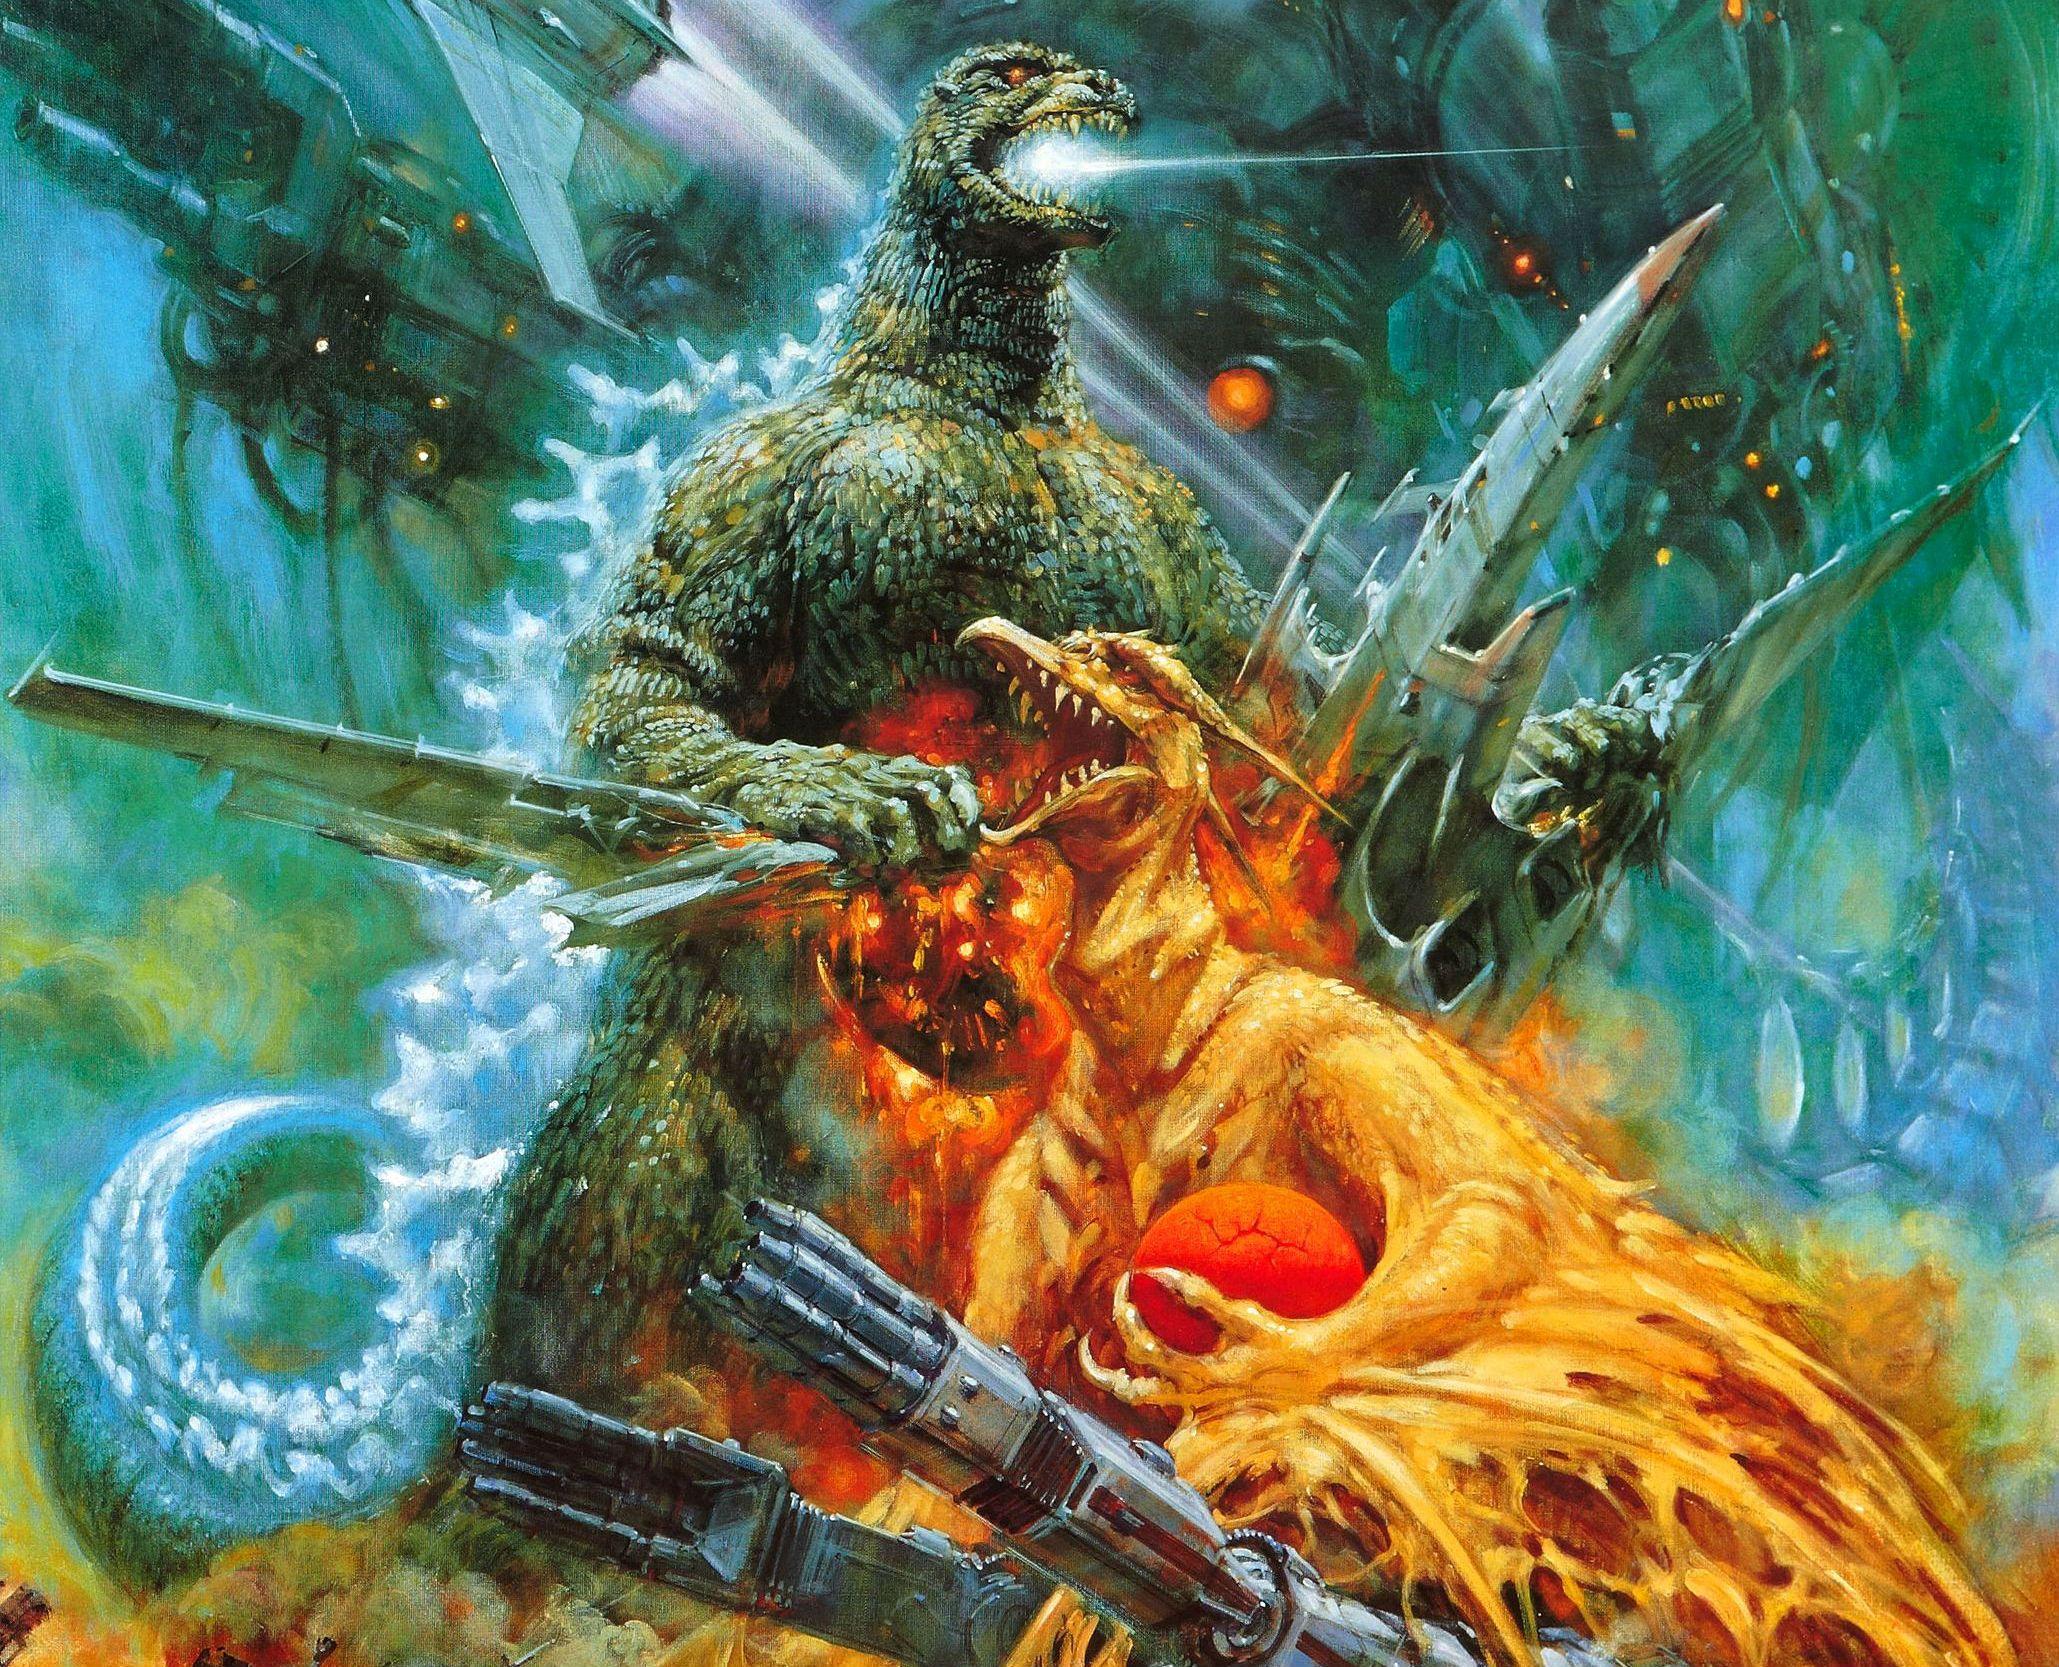 GODZILLA Sci Fi Fantasy Action Dinosaur Monster Battle F Wallpaper